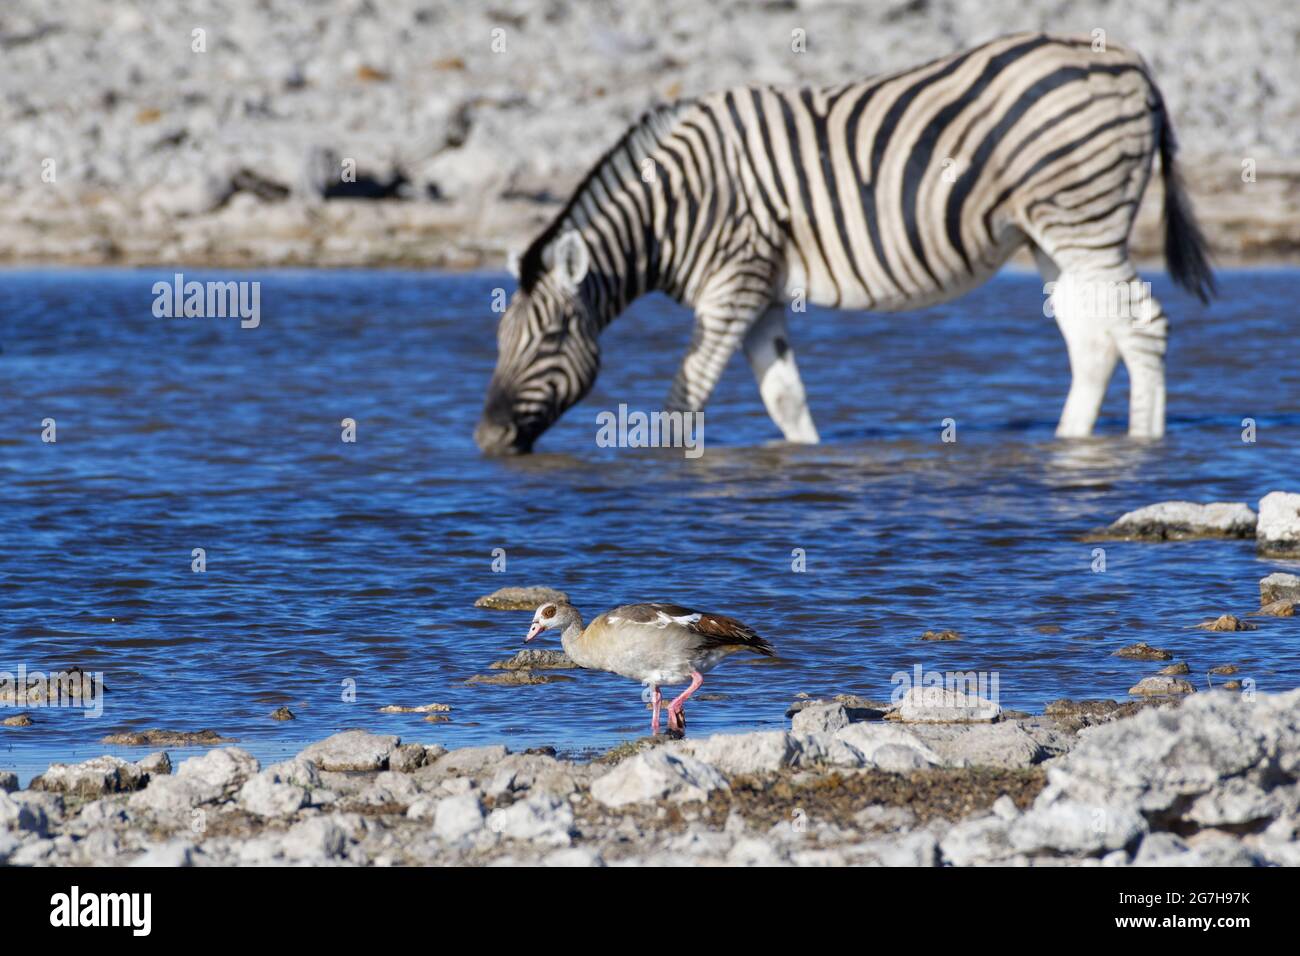 Oie égyptienne (Alopochen aegyptiaca) à la recherche de nourriture, zébra de Burchell (Equus quagga burchellii) dans l'eau potable à l'arrière, Etosha NP, Namibie Banque D'Images